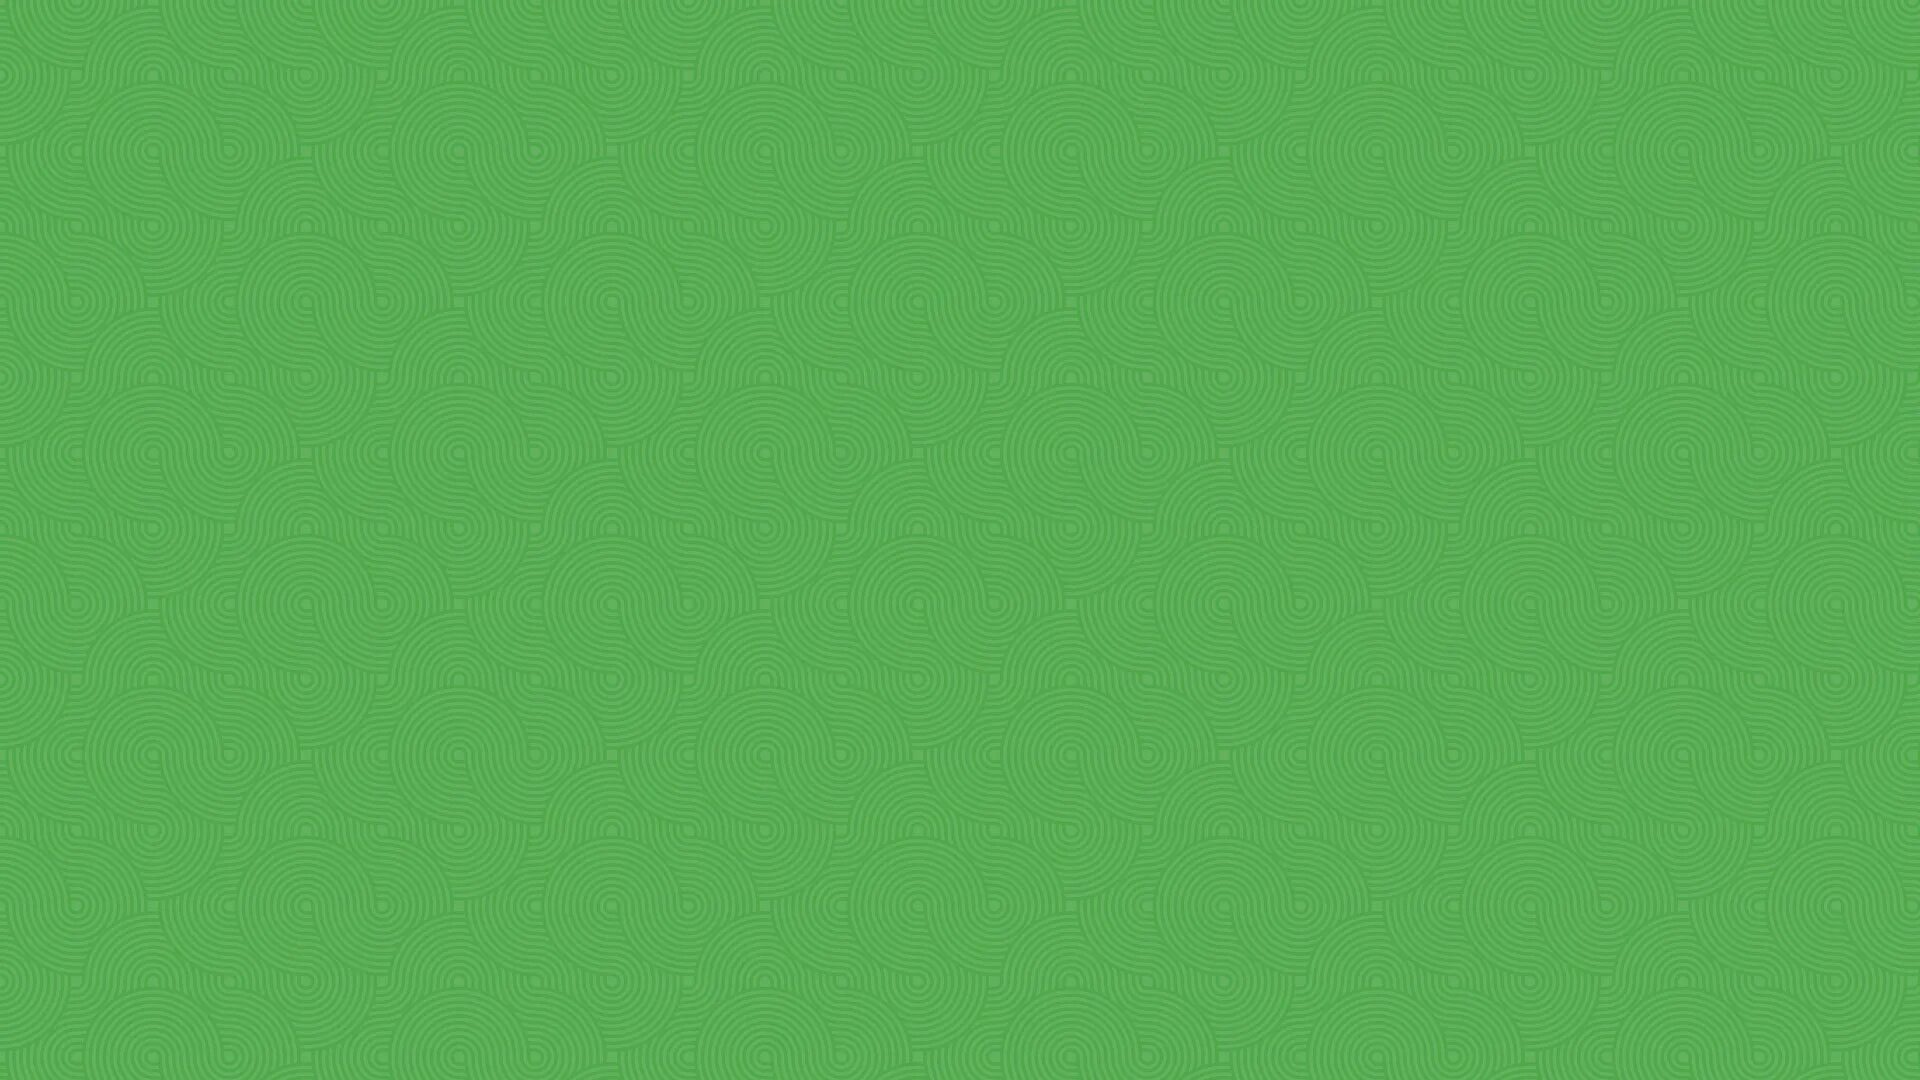 Обои без ничего. Салатовый фон однотонный. Зеленый цвет однотонный. Зеленые обои. Ярко зеленый фон.